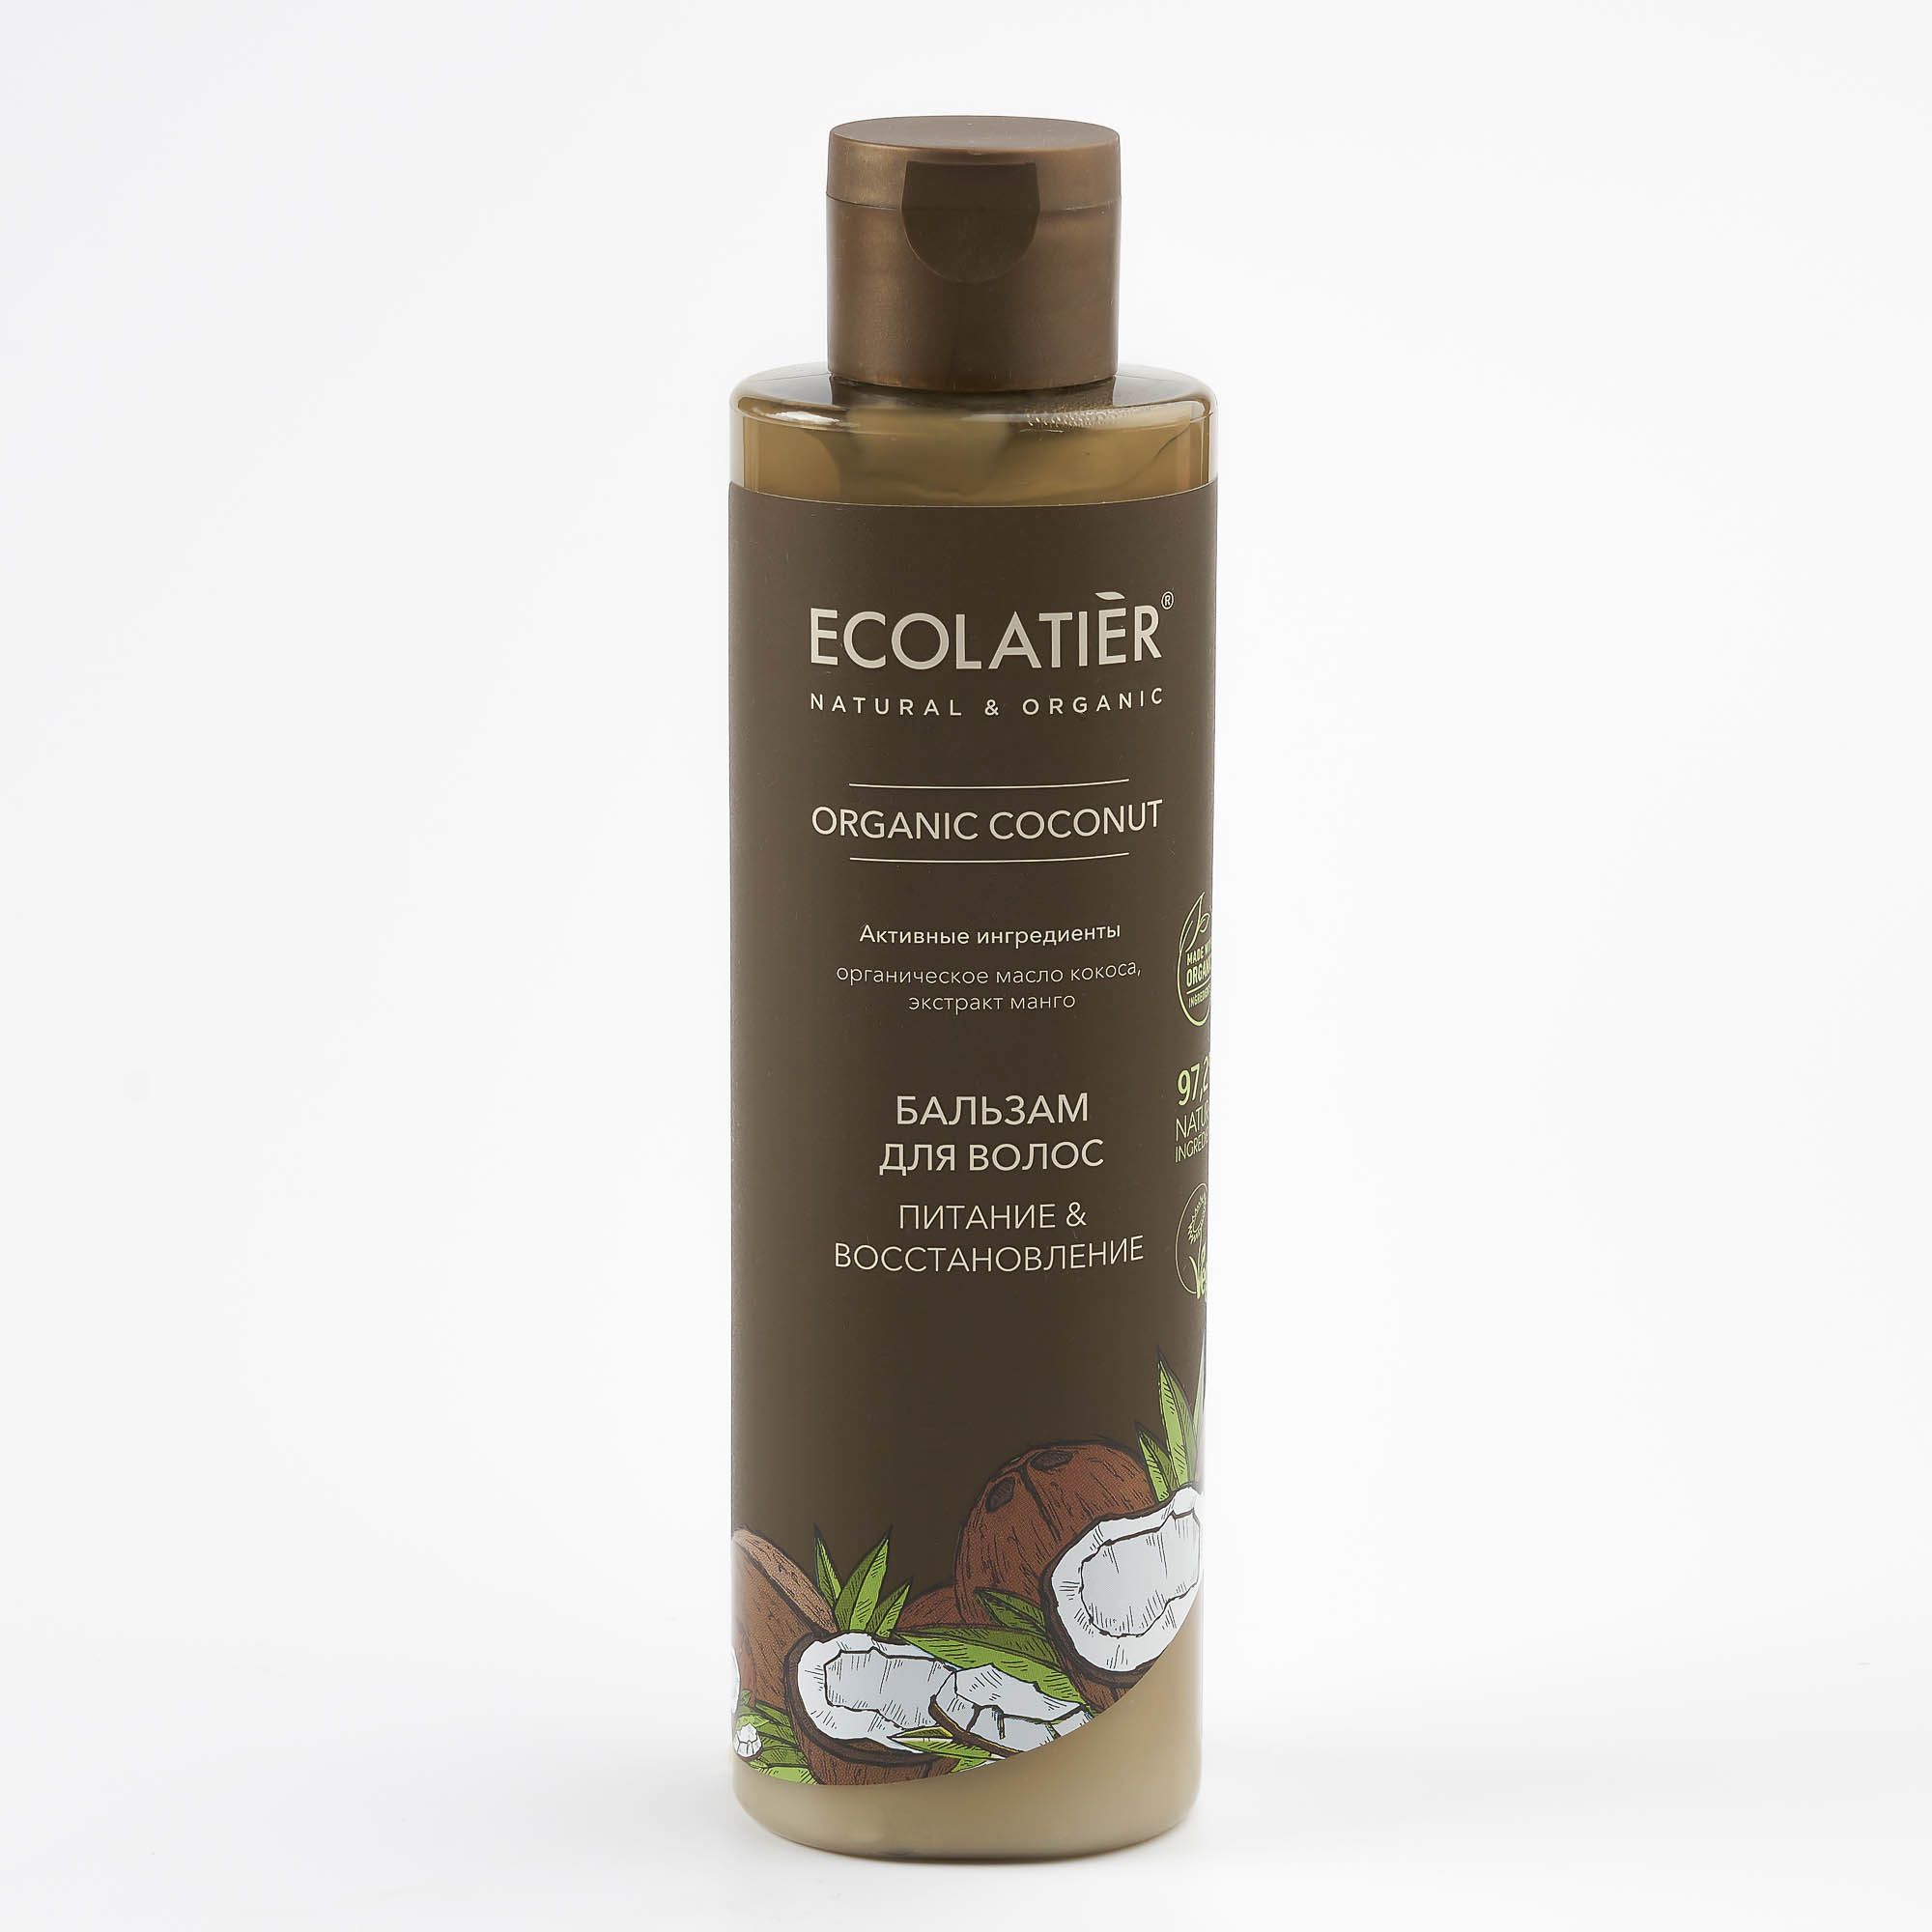 Ecolatier Бальзам для волос Питание и восстановление Organic Coconut